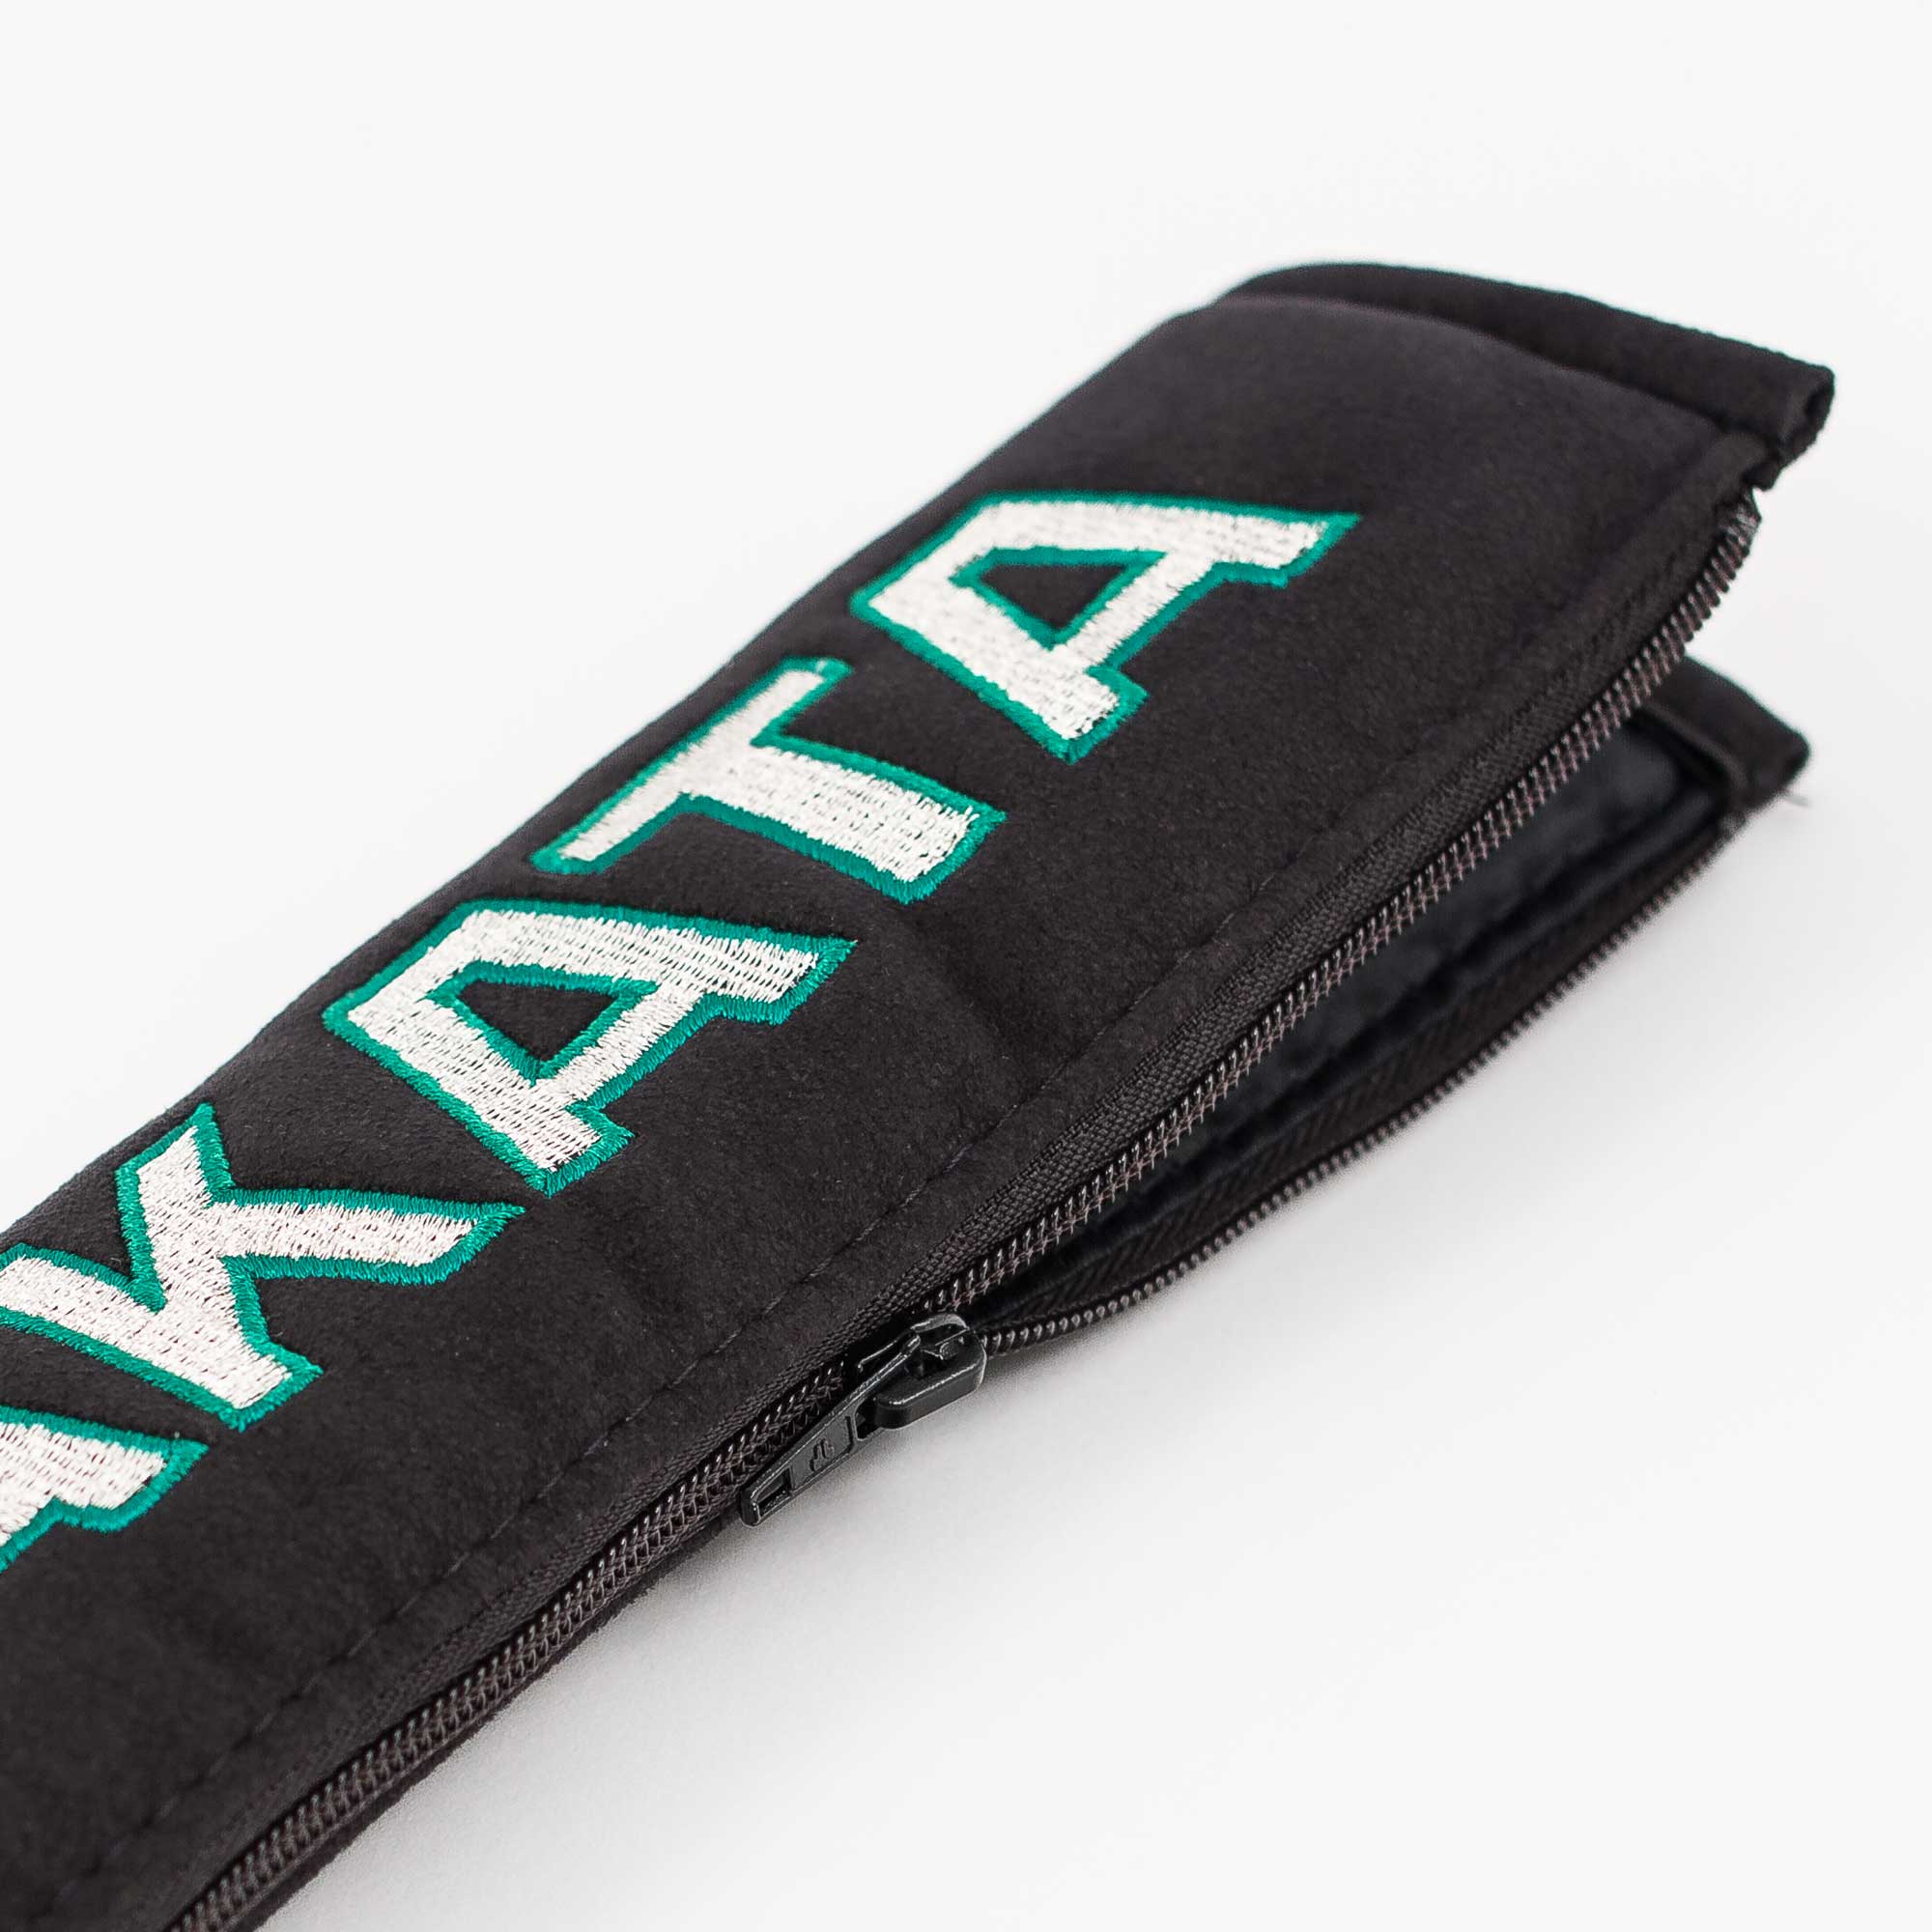 A pair of Takata comfort seat belt shoulder pads in black.